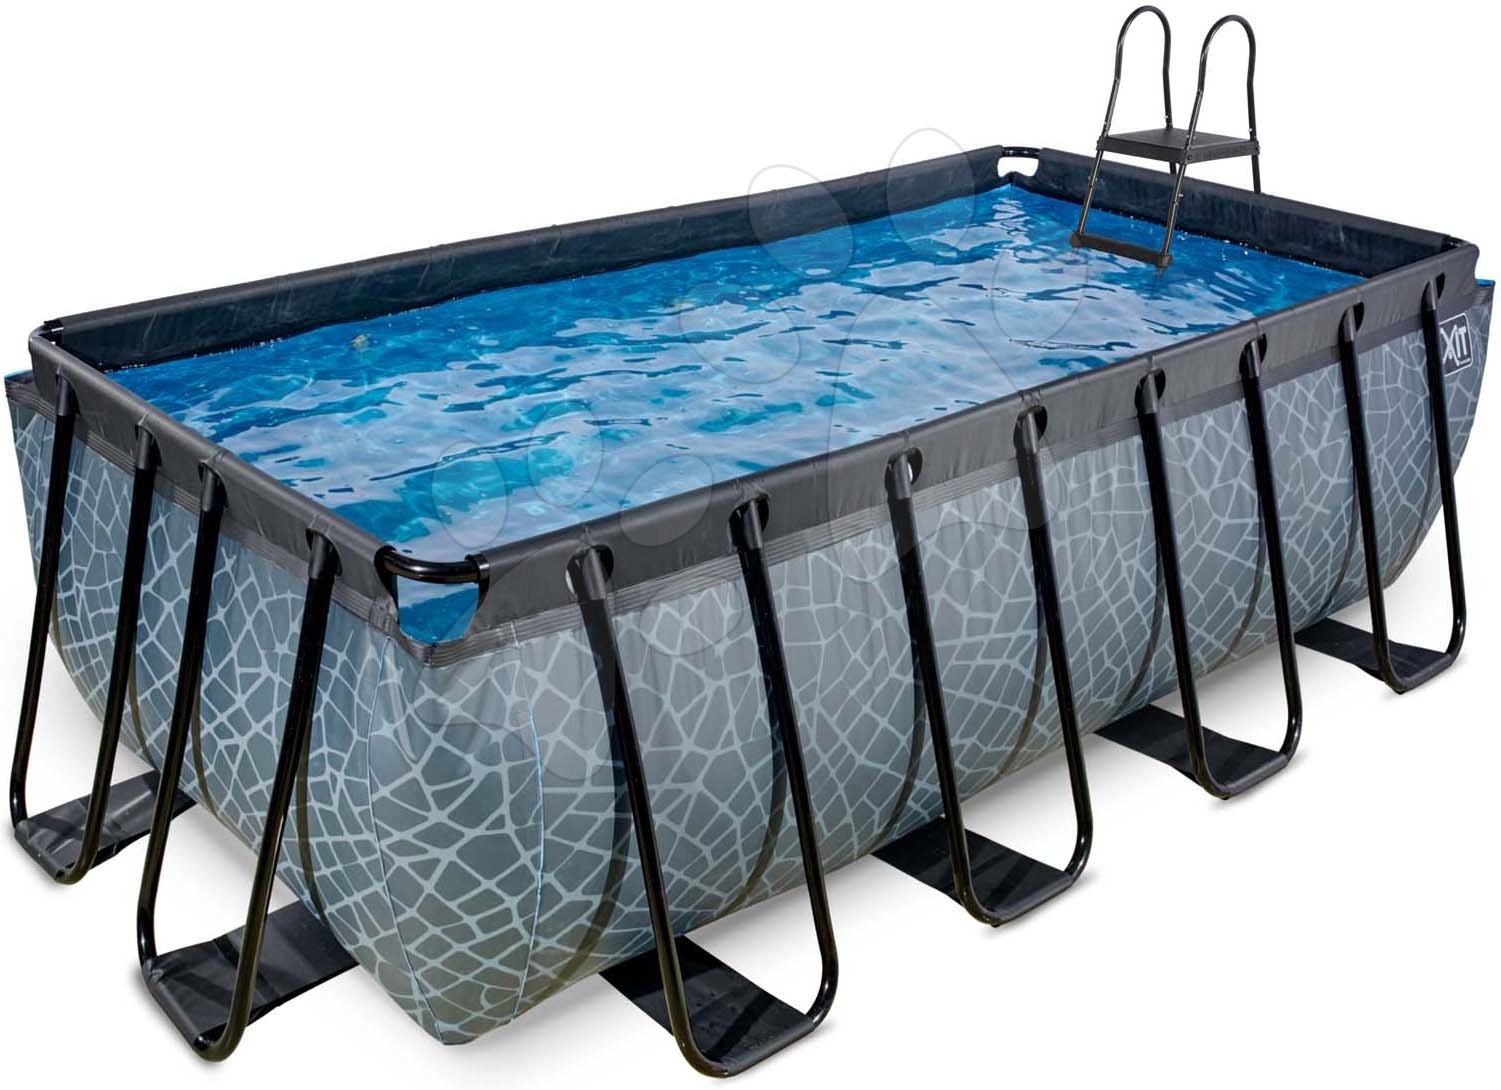 Bazén s pískovou filtrací Stone pool Exit Toys ocelová konstrukce 400*200*122 cm šedý od 6 let